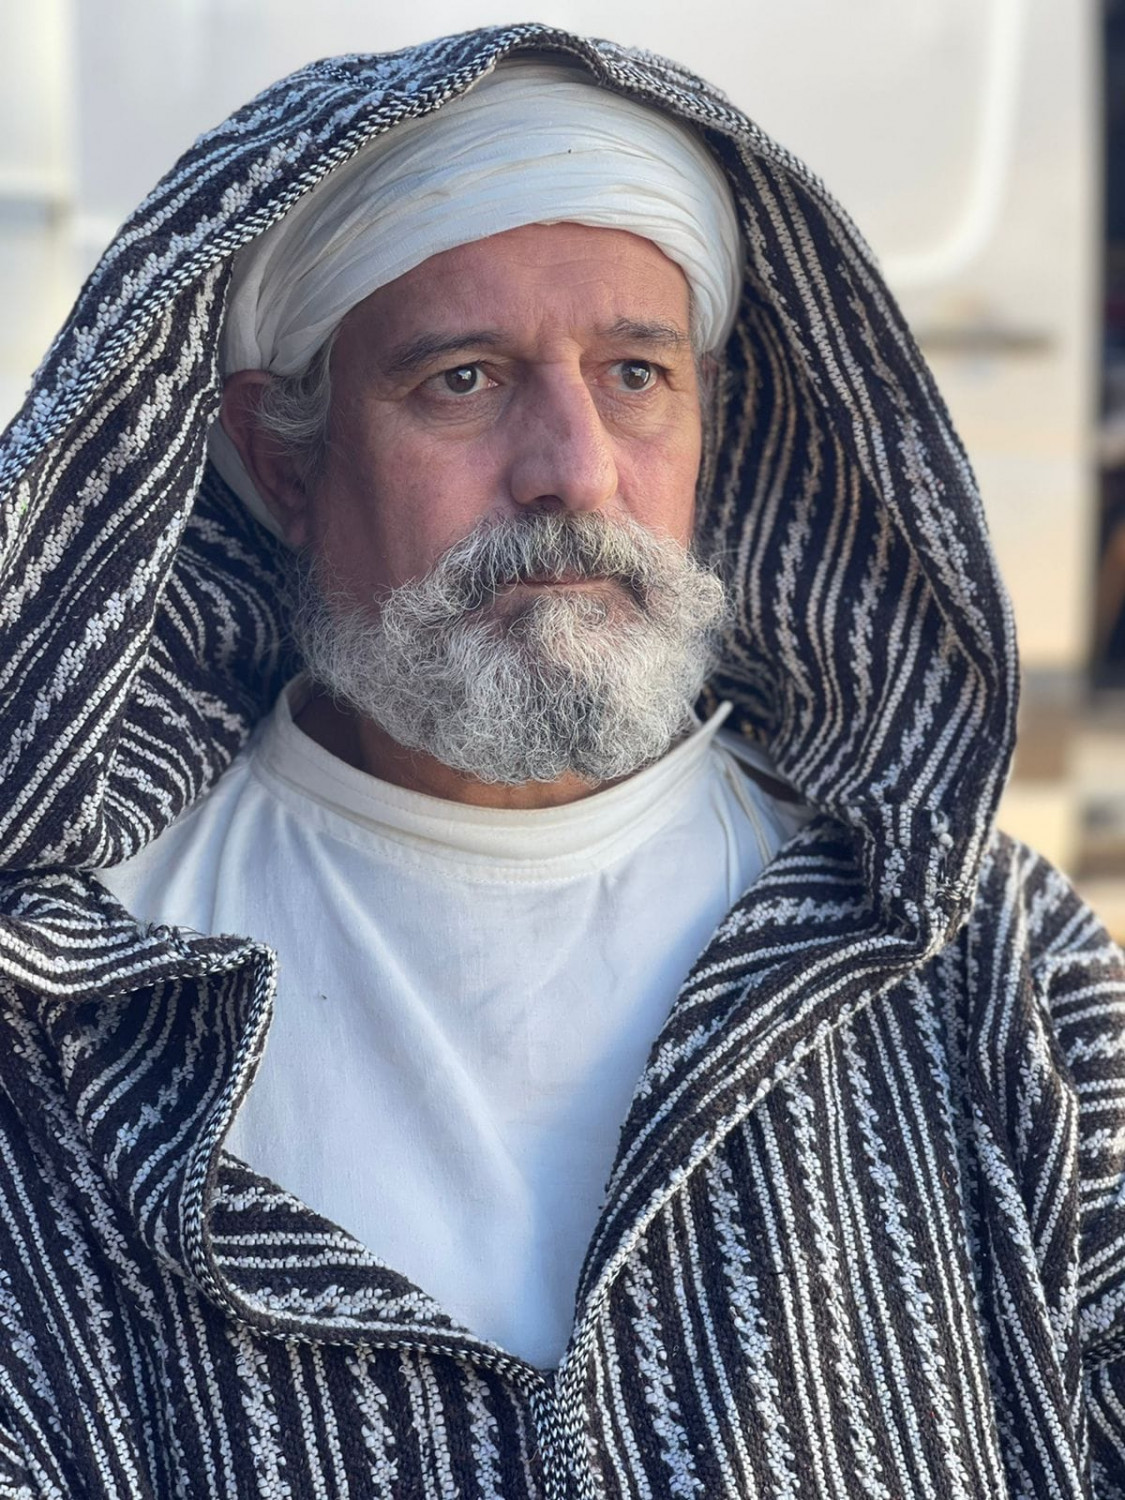 محمد الشوبي في فيلم "أنوال"